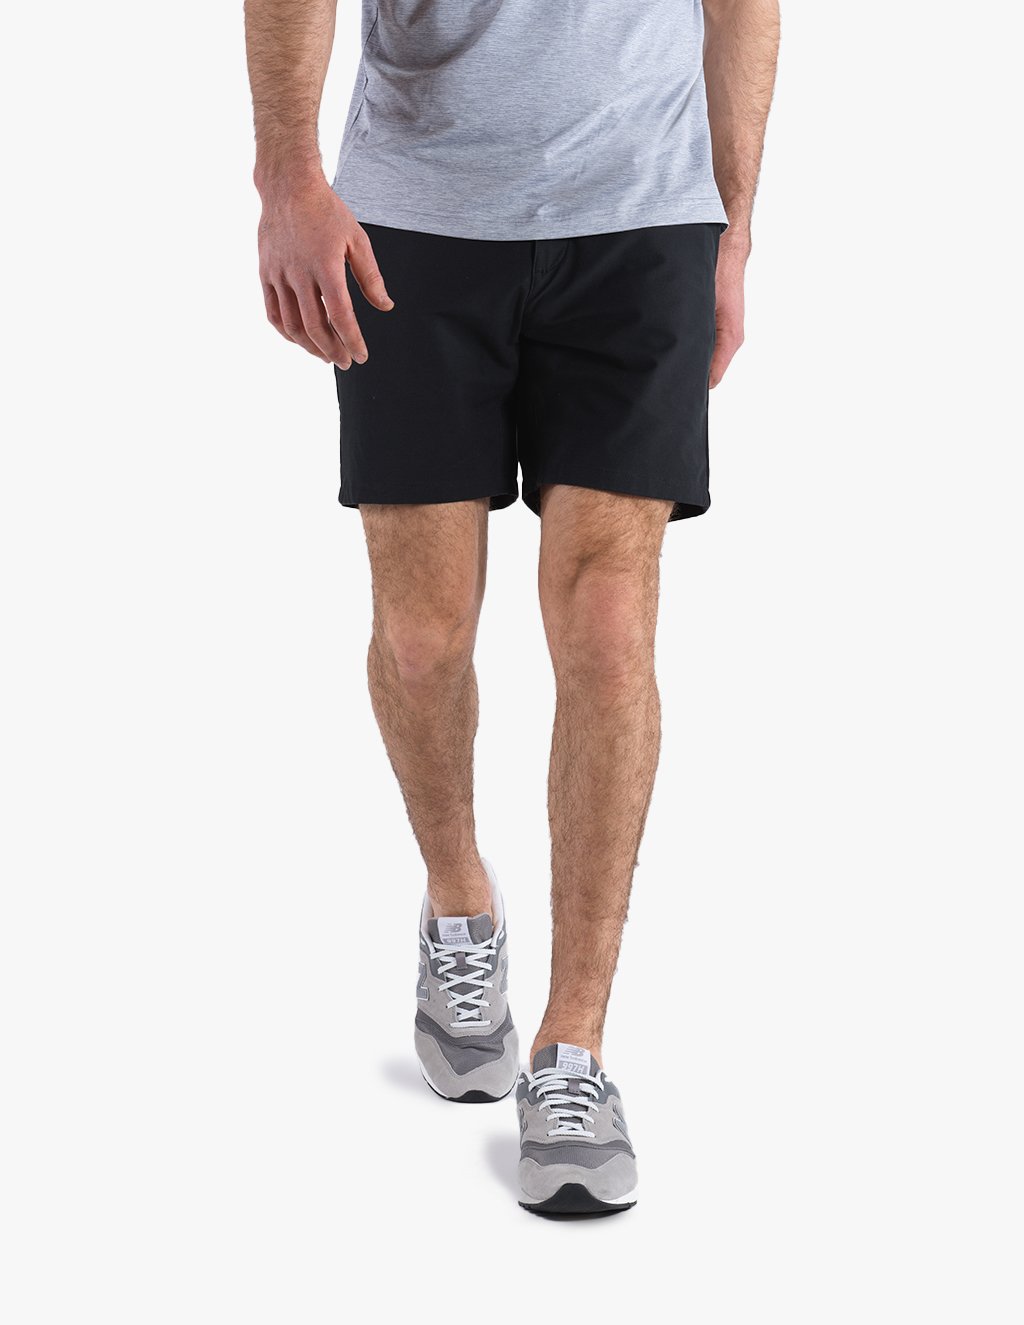 Golf Shorts-Black_1.jpg